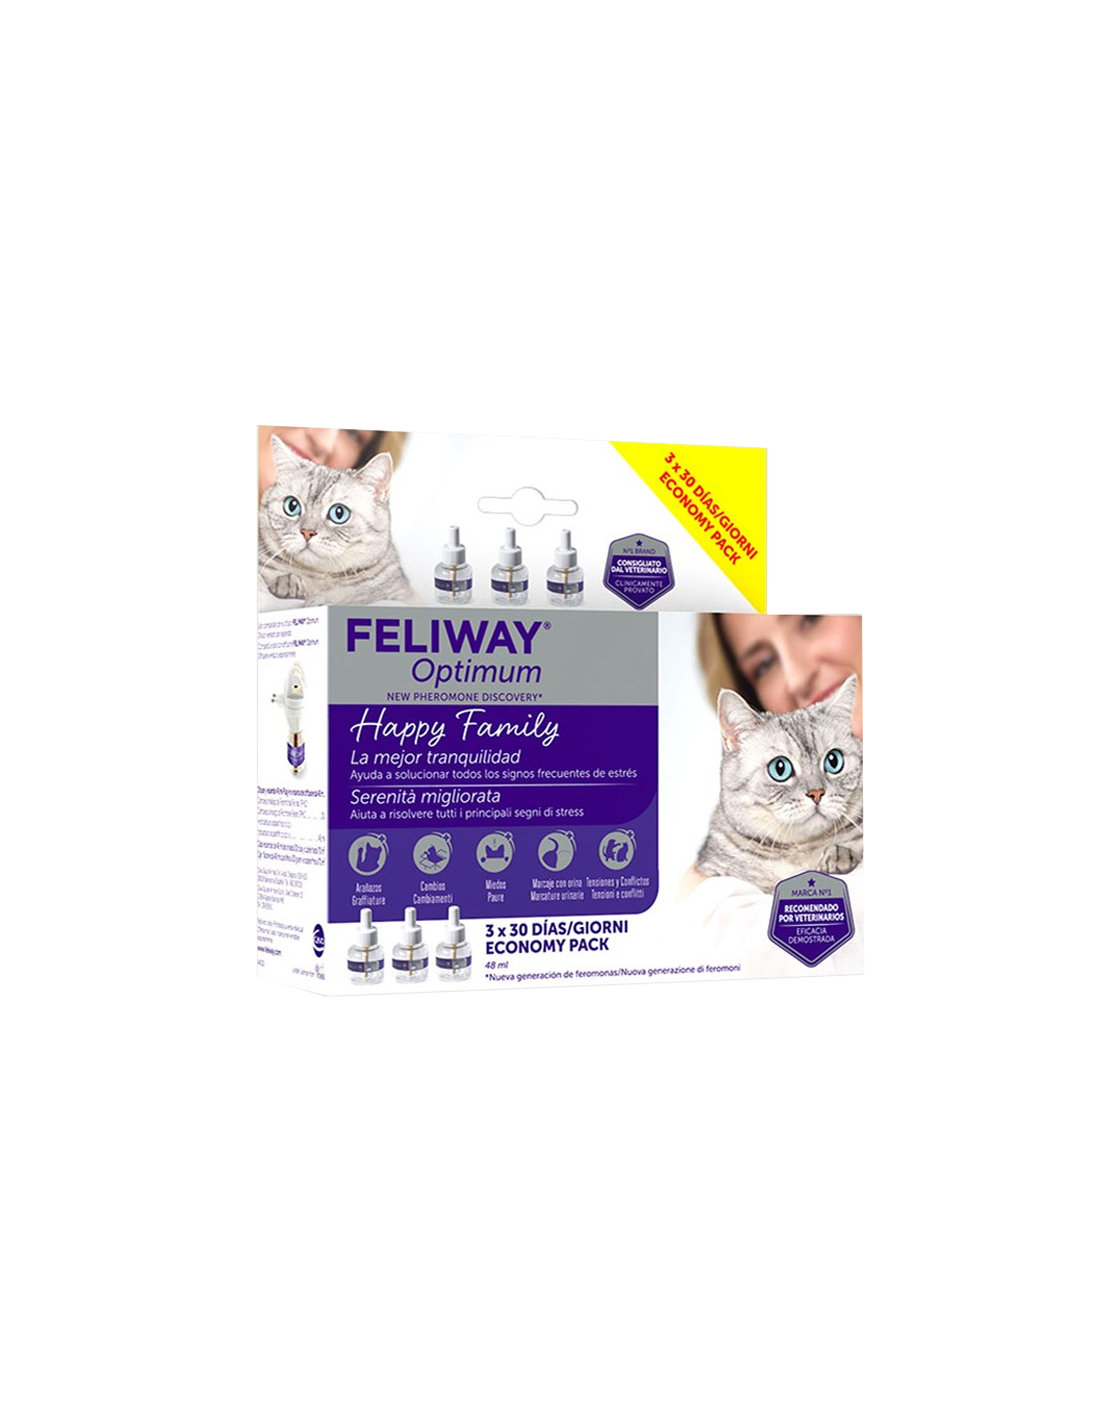 Feliway Optimum, nuevo tratamiento de feromonas - Blog de Zootecnia